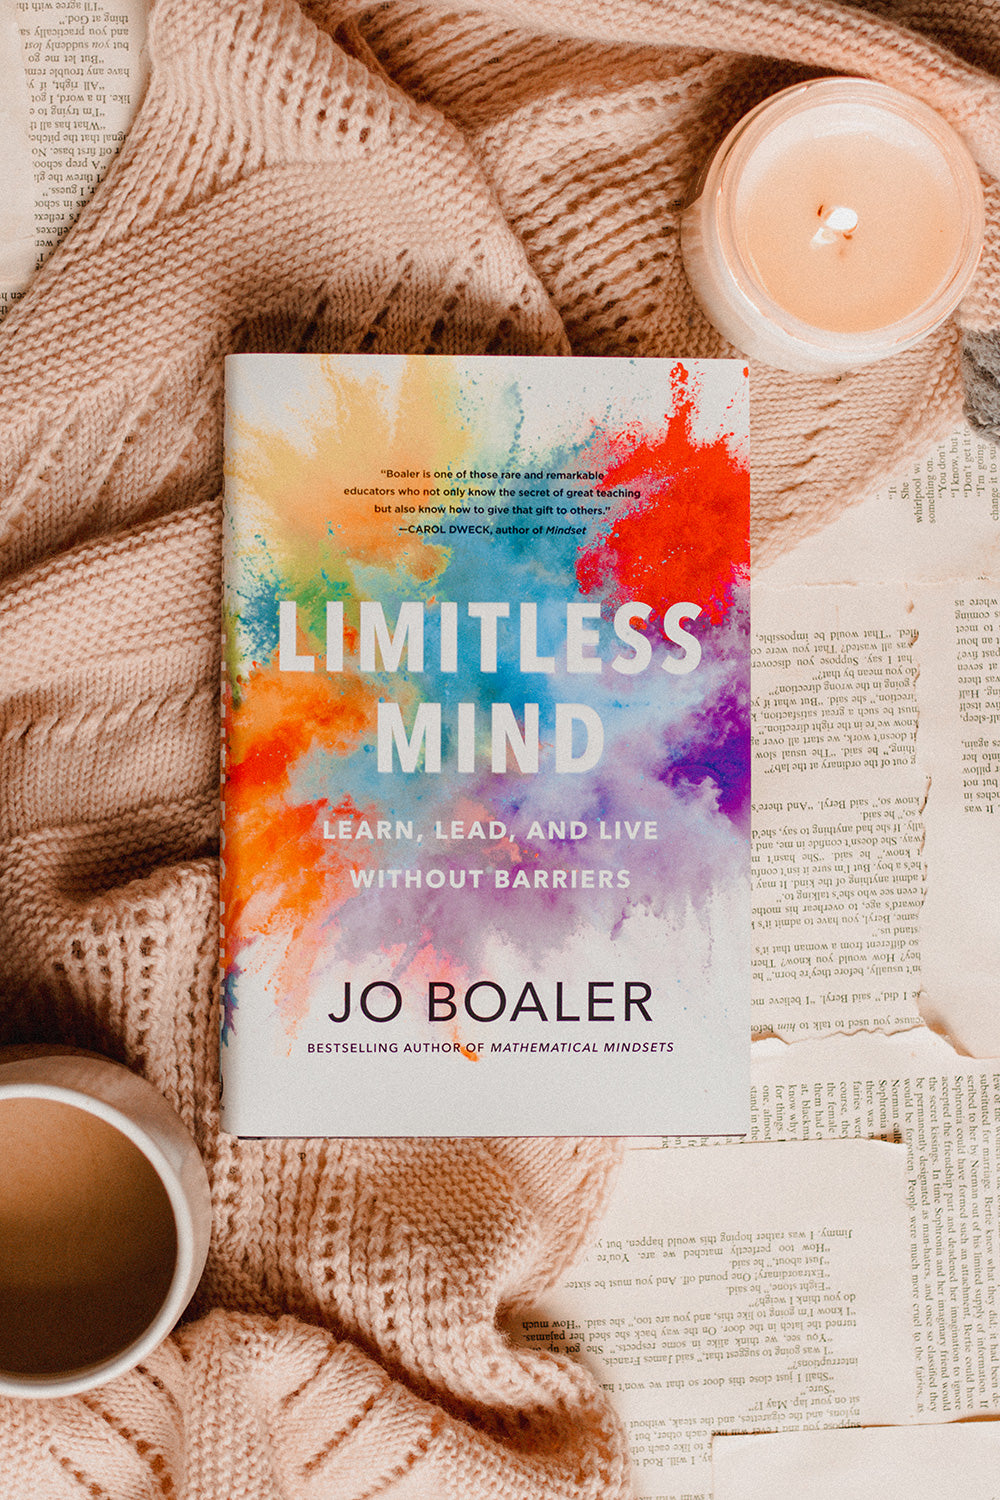 Limitless Mind by Jo Boaler